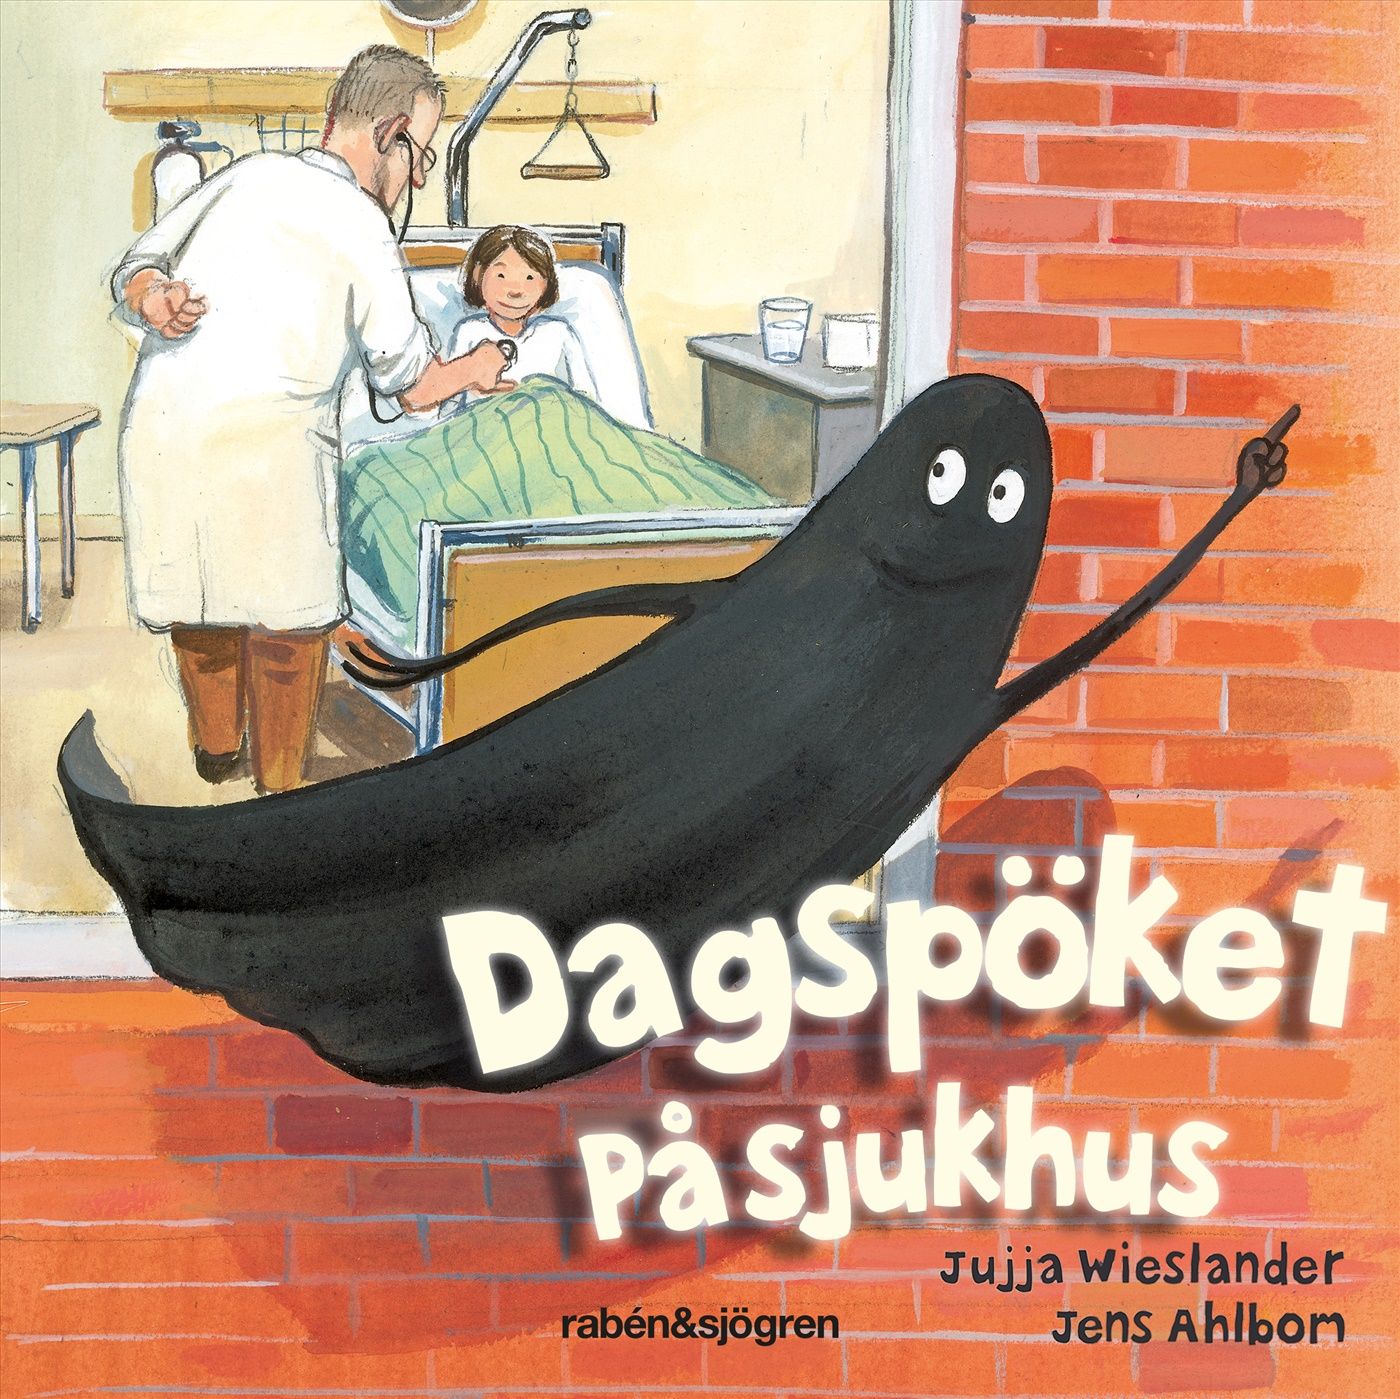 Dagspöket på sjukhus, ljudbok av Jujja Wieslander